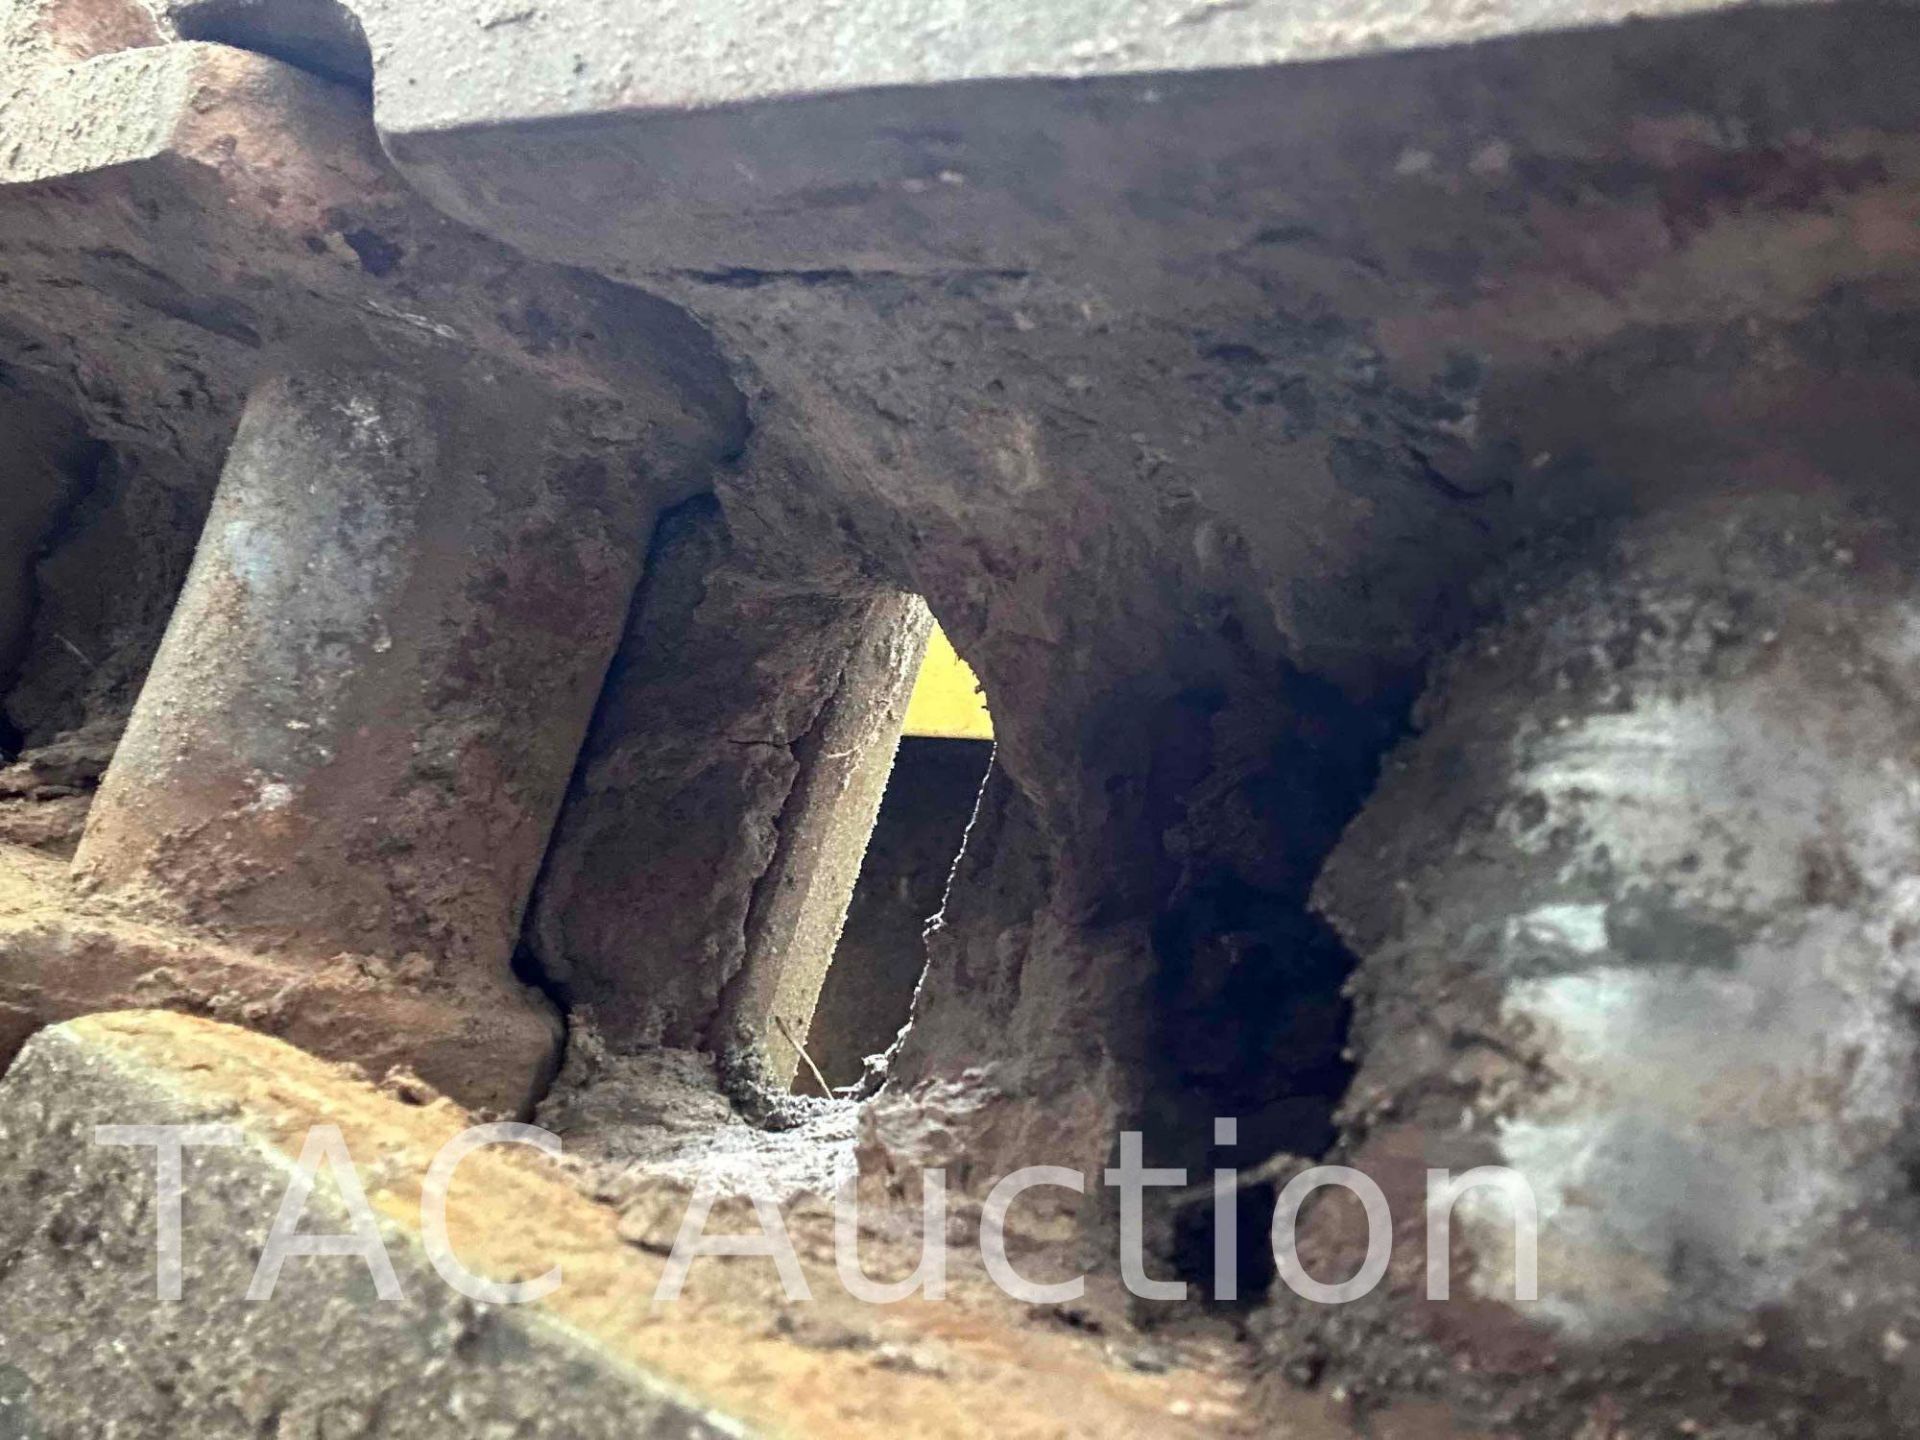 2018 CAT 320 Hydraulic Excavator - Image 47 of 82